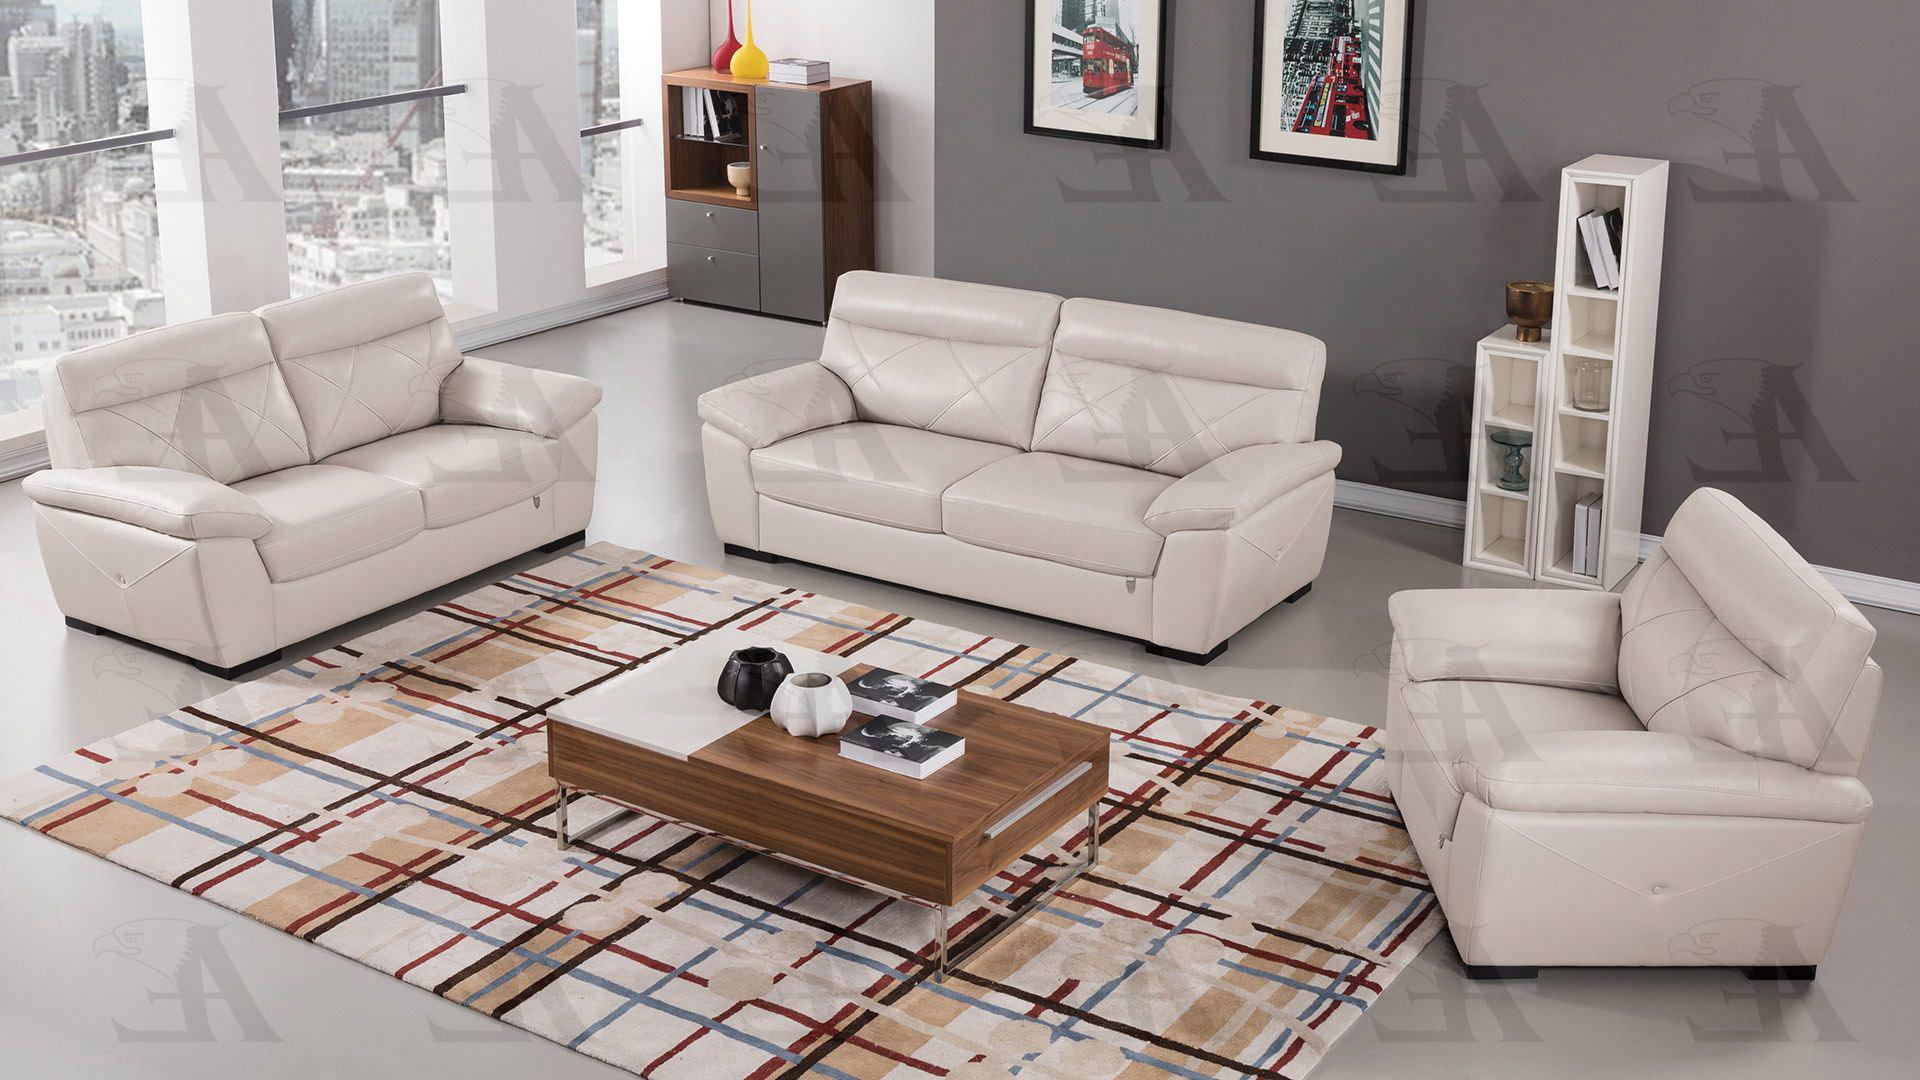 Contemporary, Modern Sofa Set EK081-LG EK081-LG-Set-3 in Light Gray Italian Leather